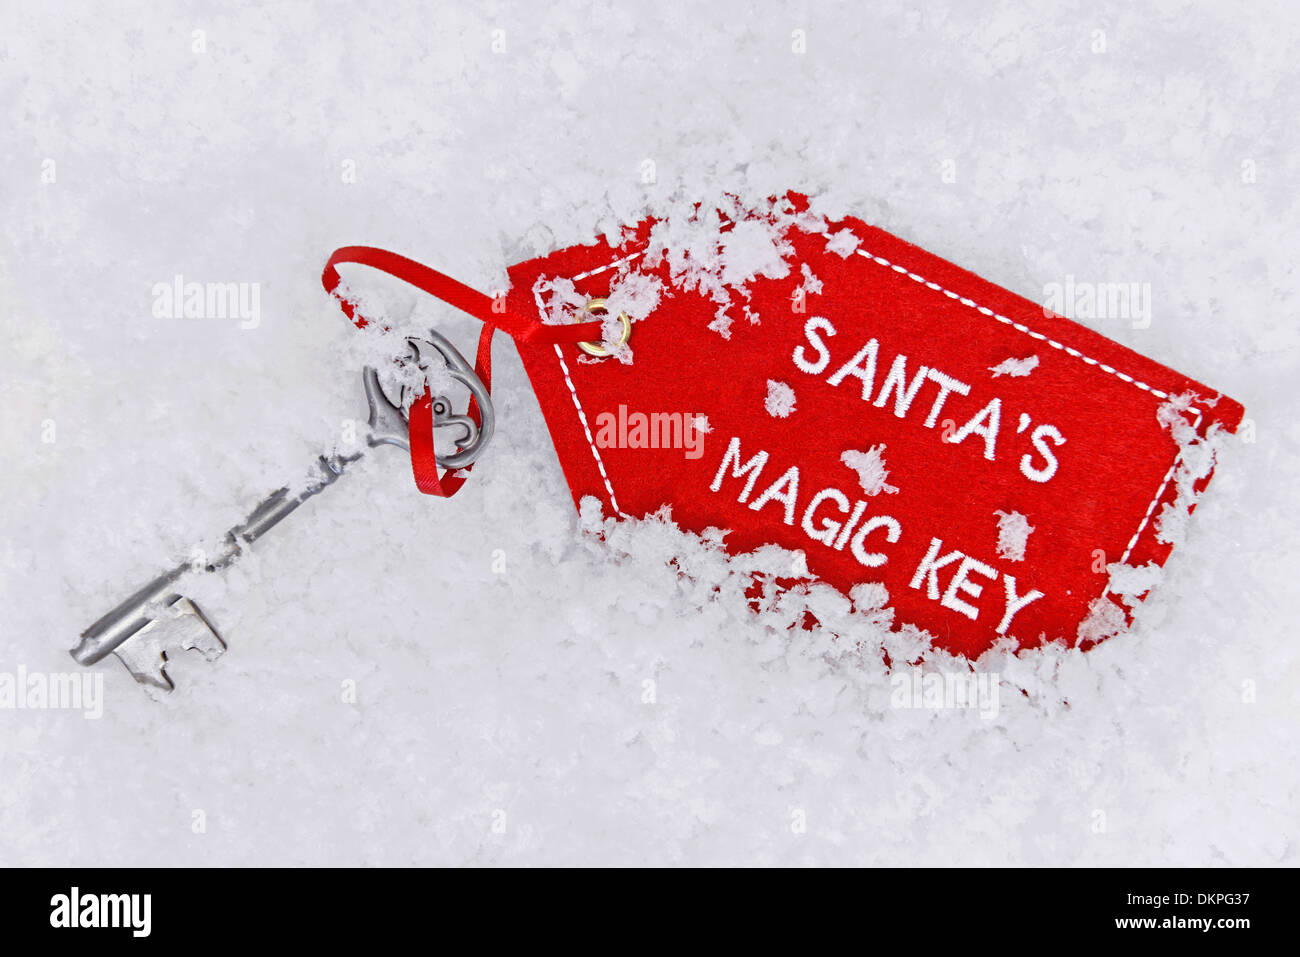 Santa cade la sua chiave magica nella neve. Foto Stock